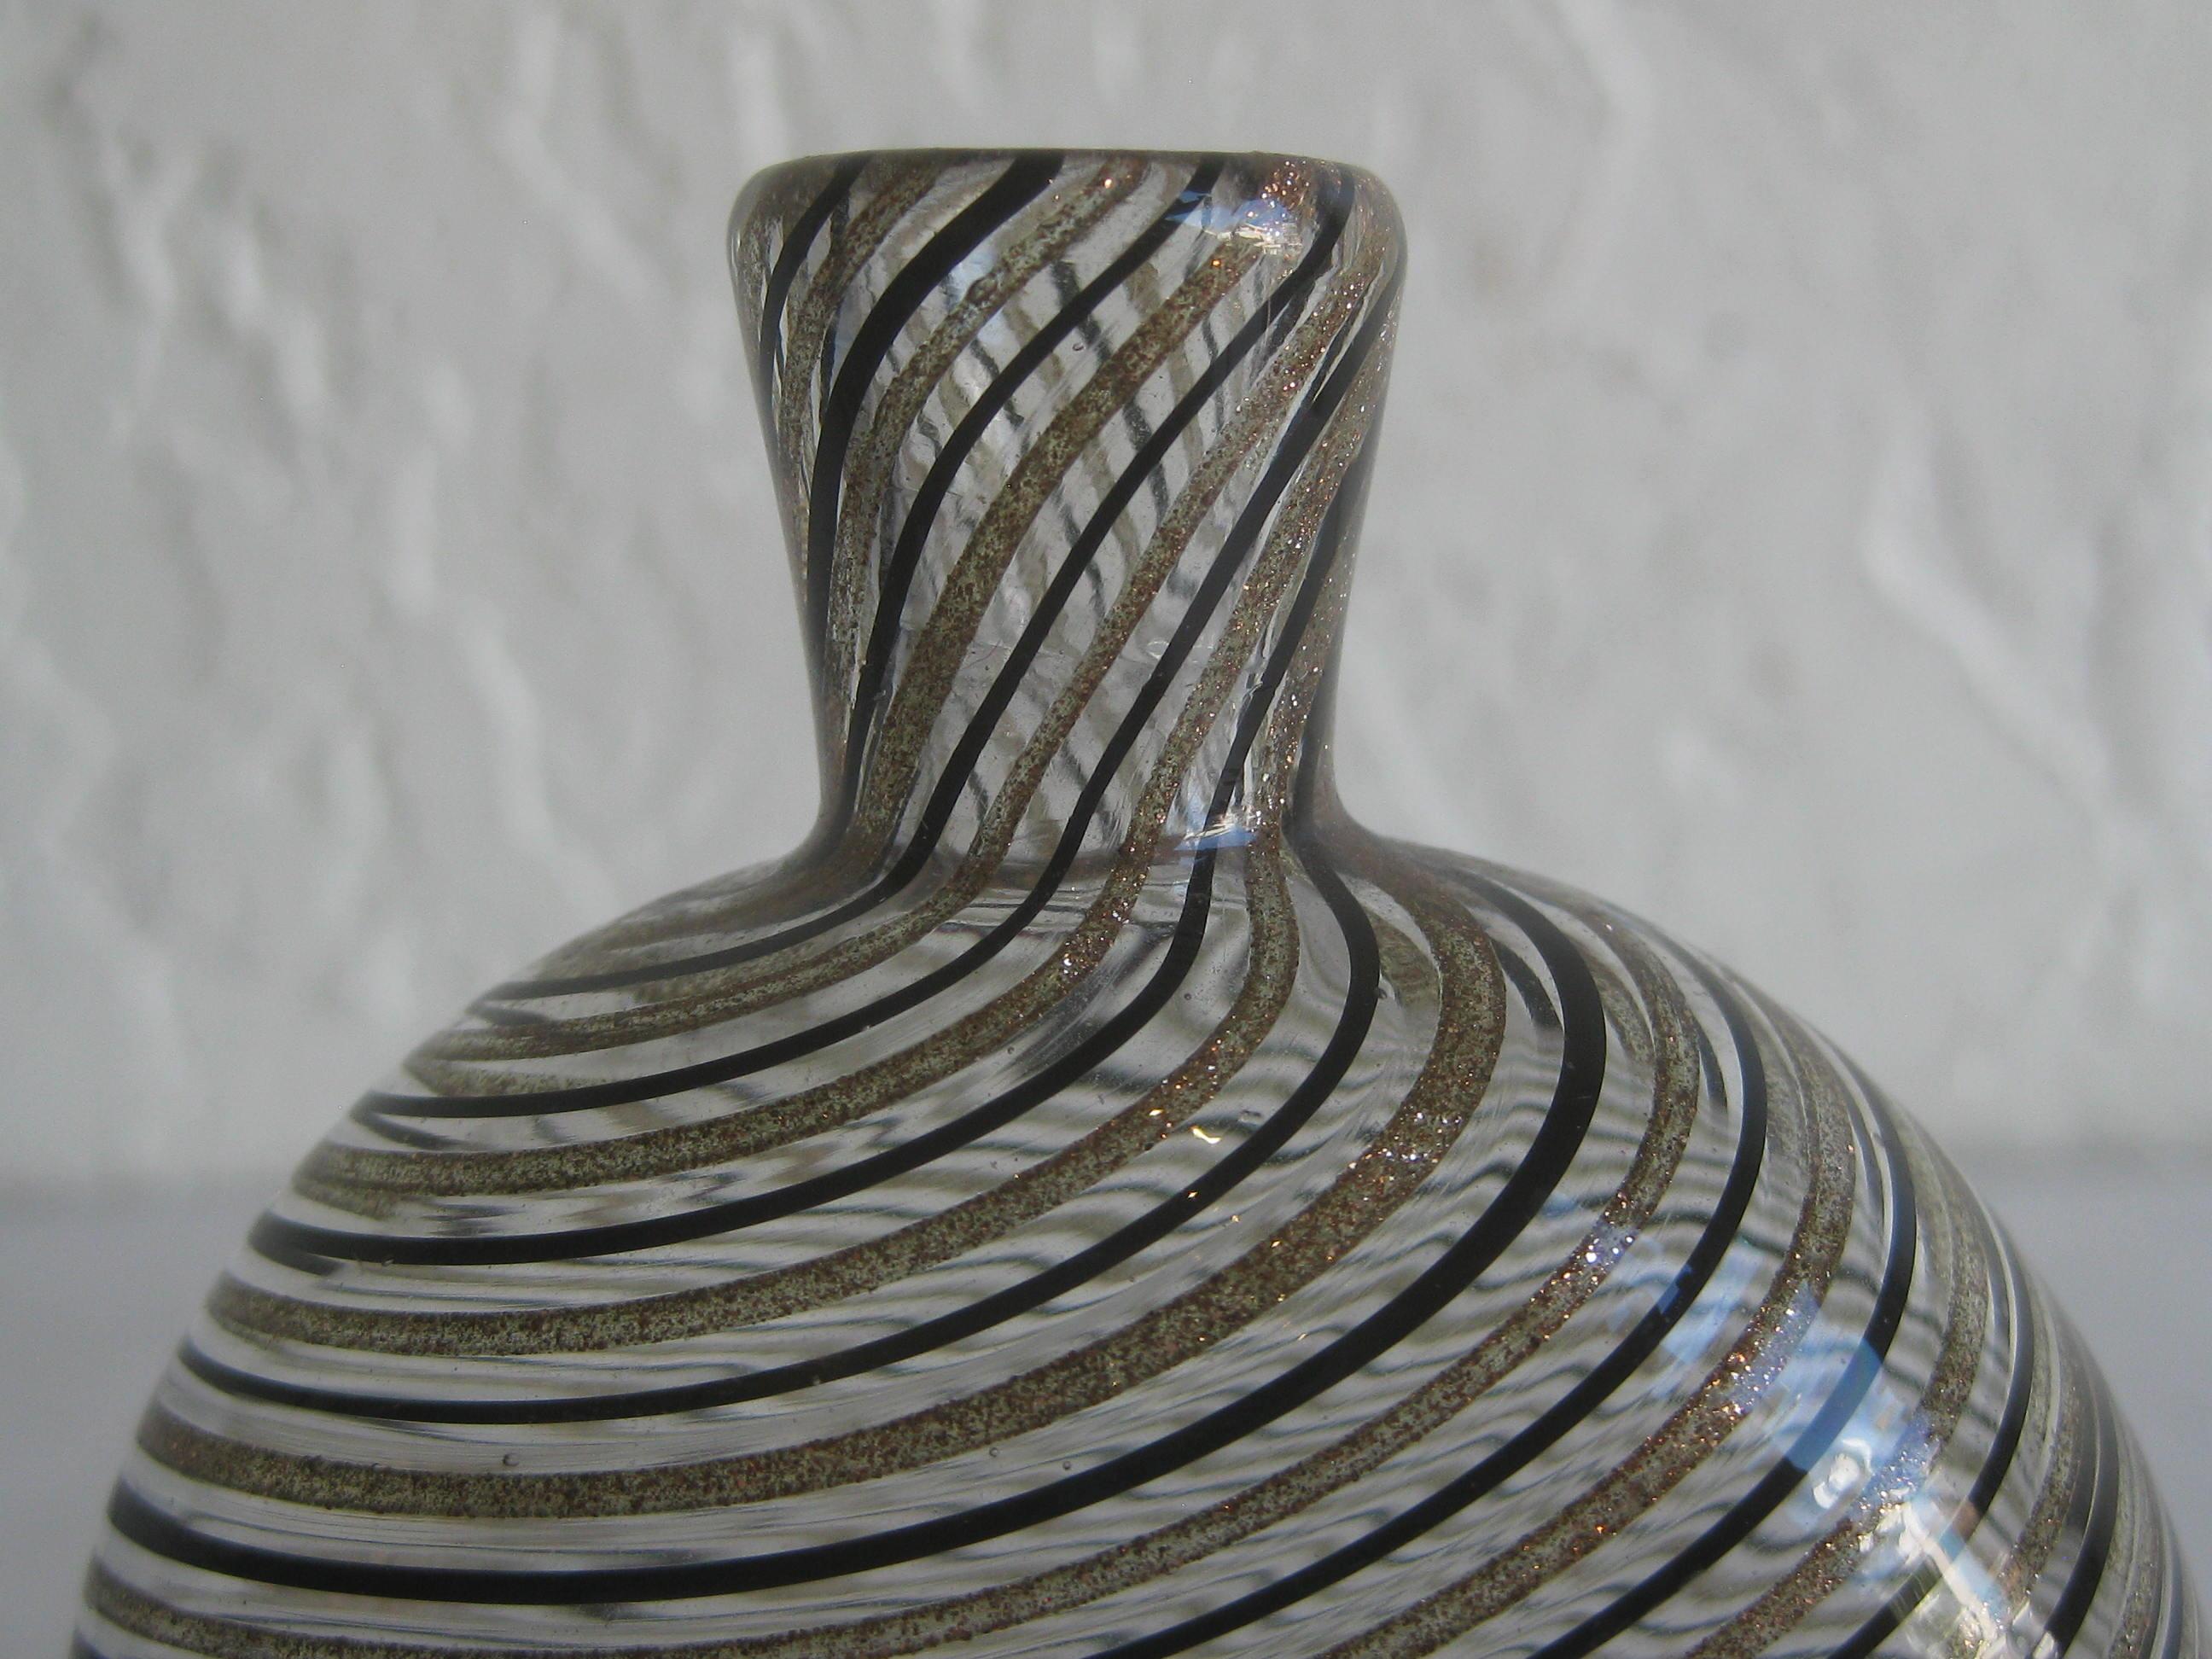 Große modernistische Dino Martens Mezza Filigrana Gold und schwarz Canes Murano Kunstglas Vase. Großartige Form und Gestalt. Die Farben sind phantastisch. Maße: 3 3/4